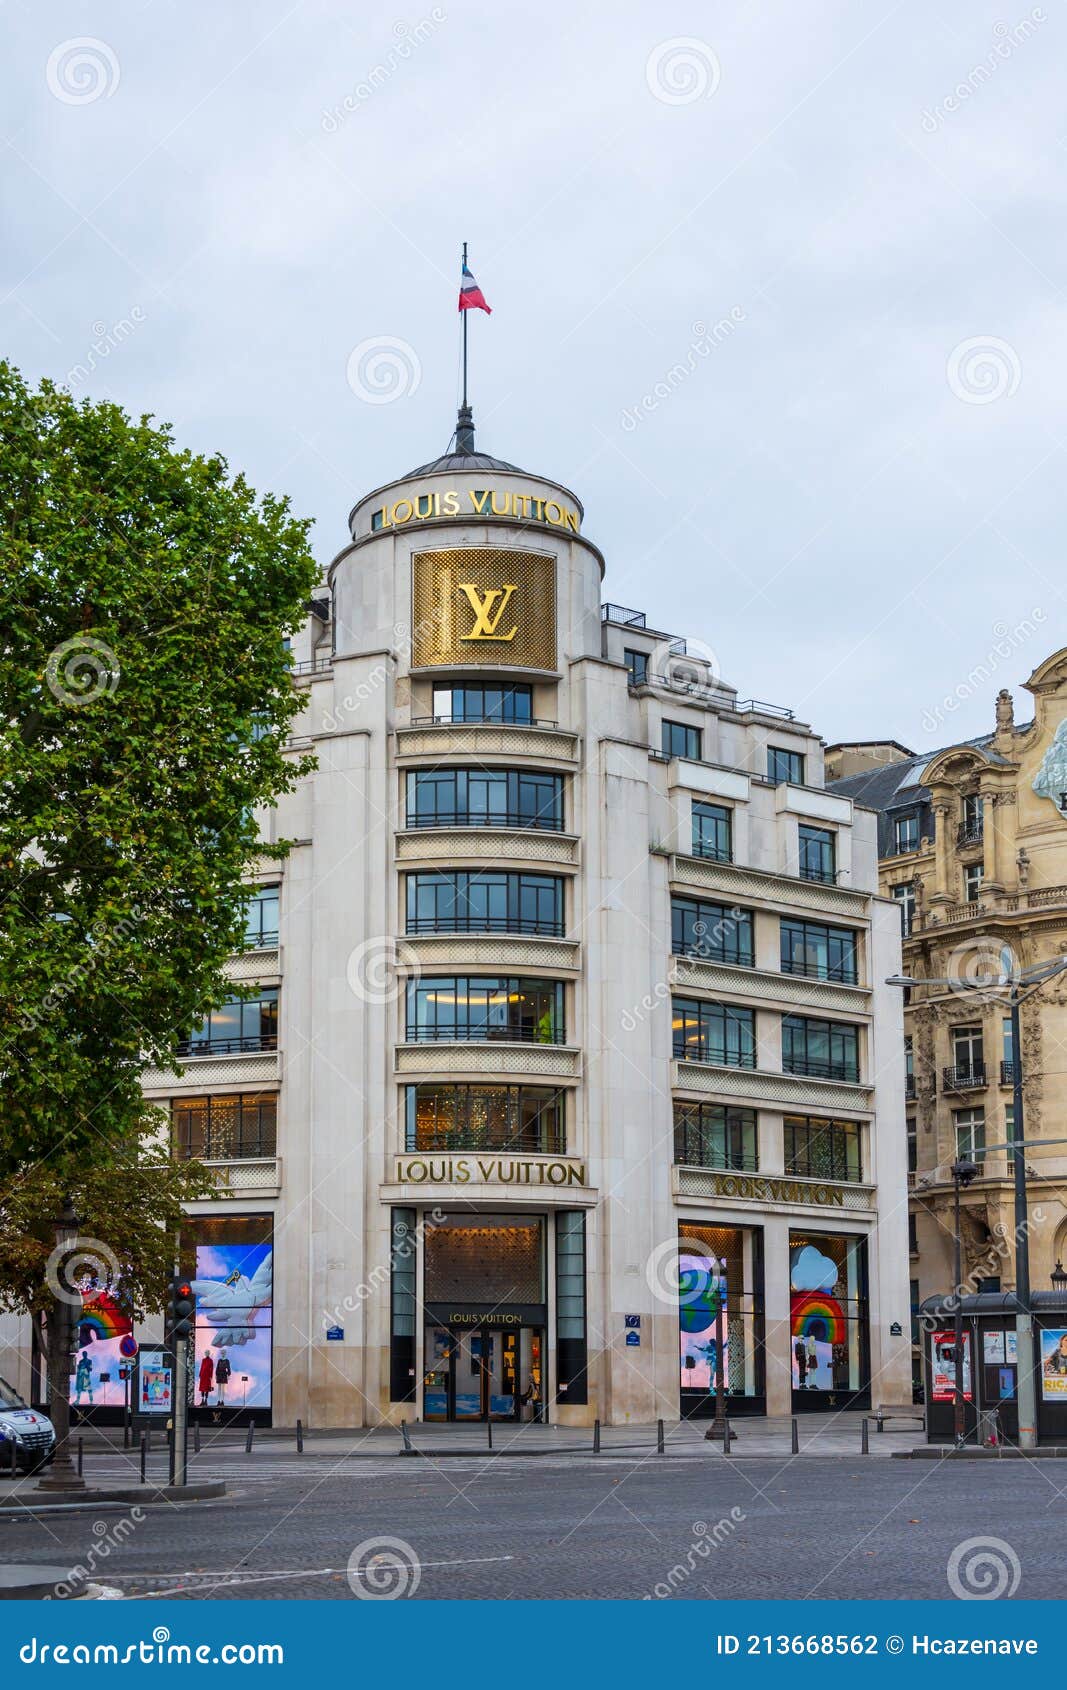 Lettering, Louis Vuitton headquarters, Paris, France, Europe